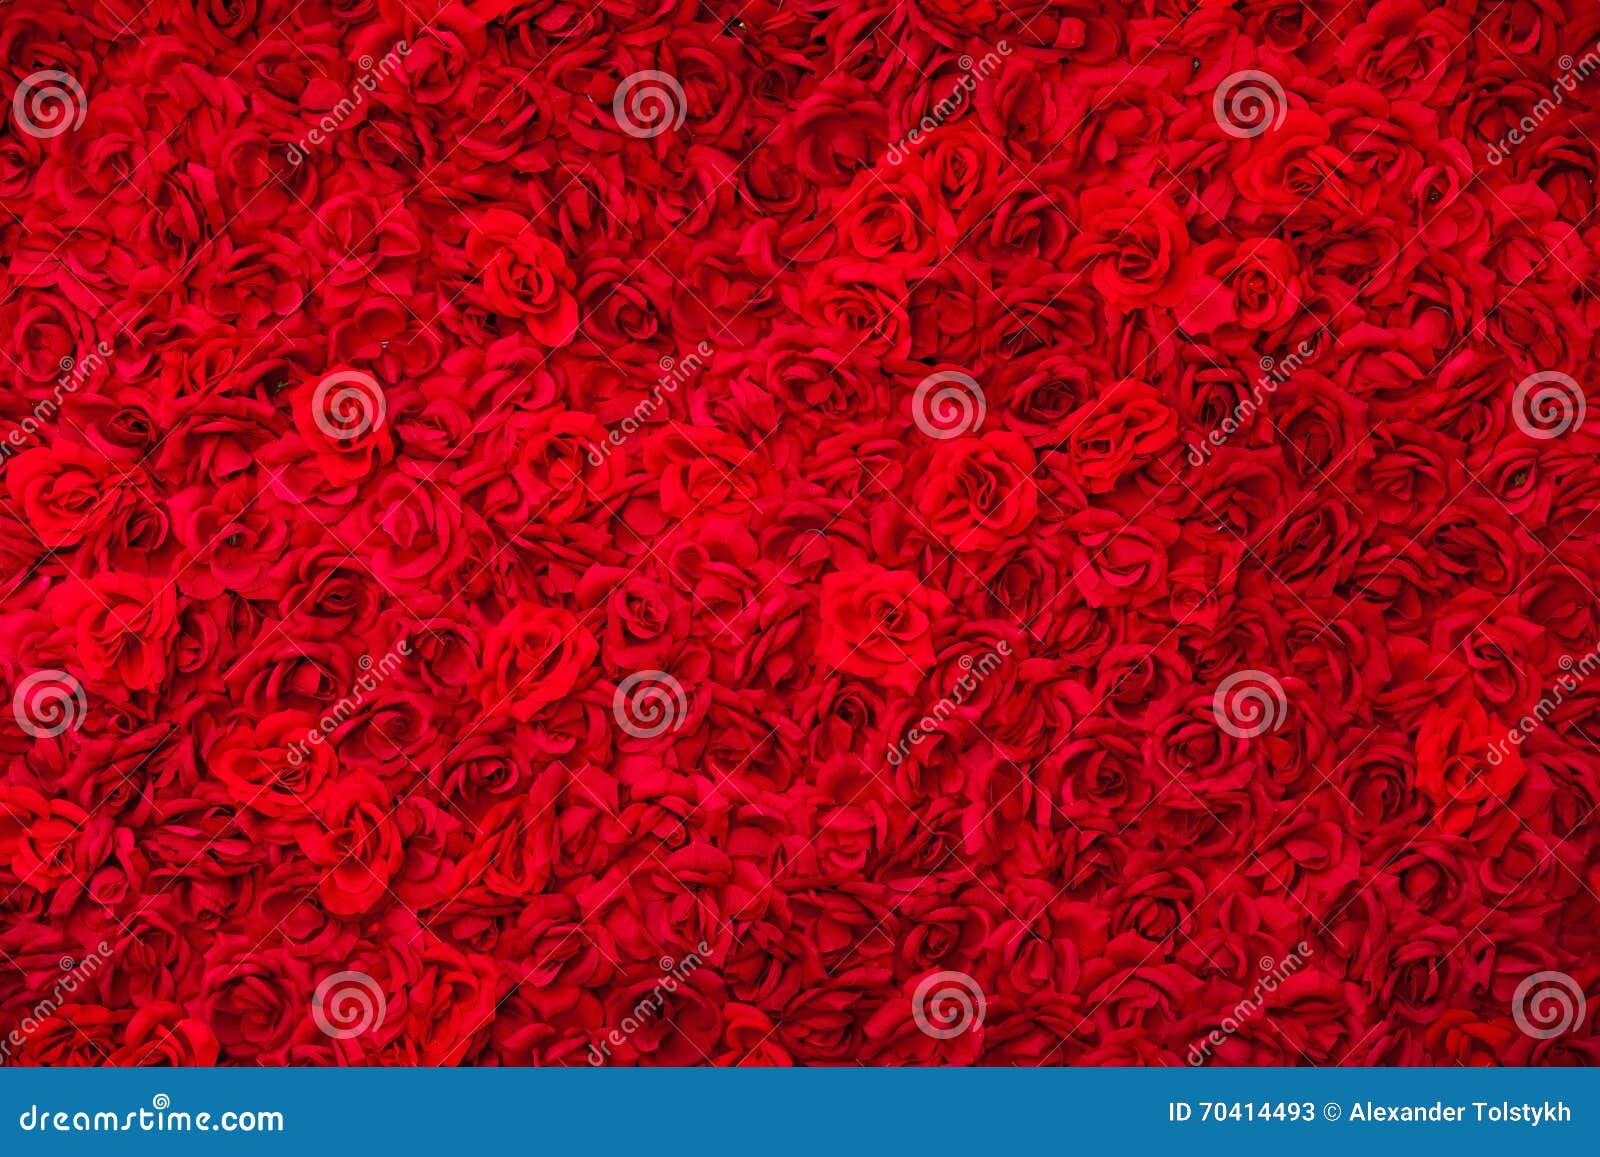 Aannemer Continent teleurstellen Tapijt van rozen backgound stock afbeelding. Image of textiel - 70414493